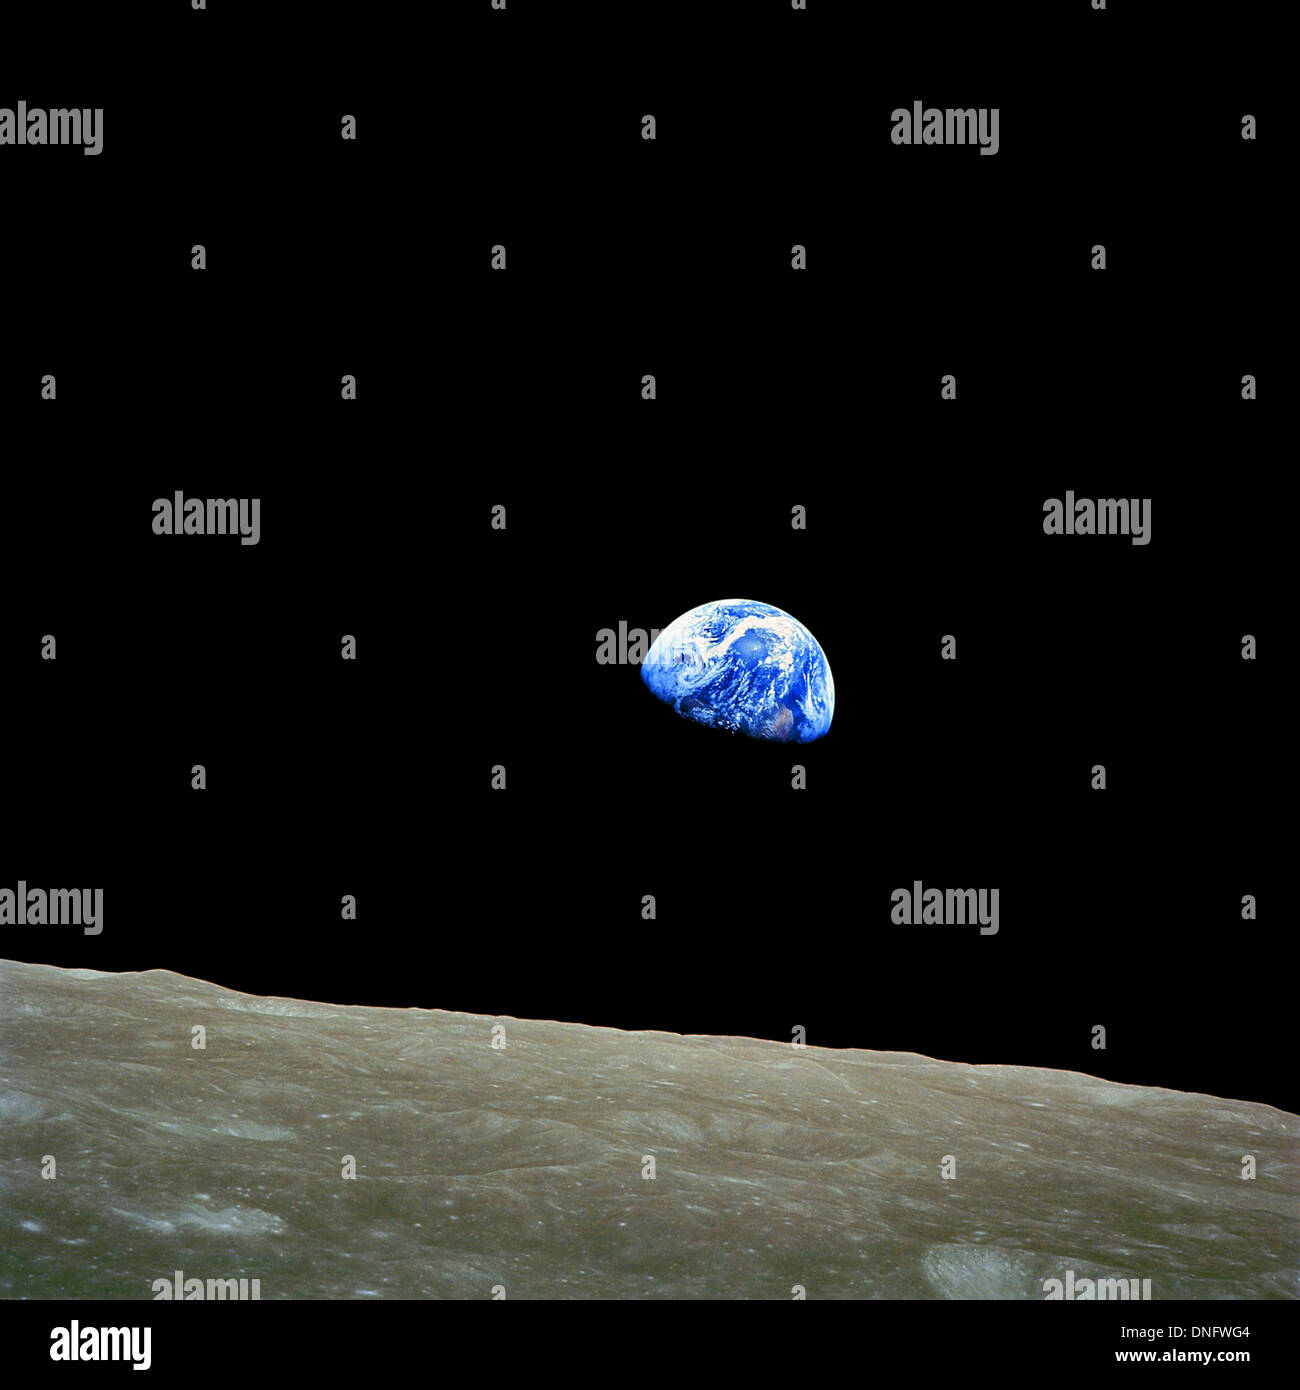 Earthrise, photographie de la planète Terre qui s'élève au-dessus de l'horizon de la Lune. Earthrise prises par l'astronaute William Anders. Banque D'Images